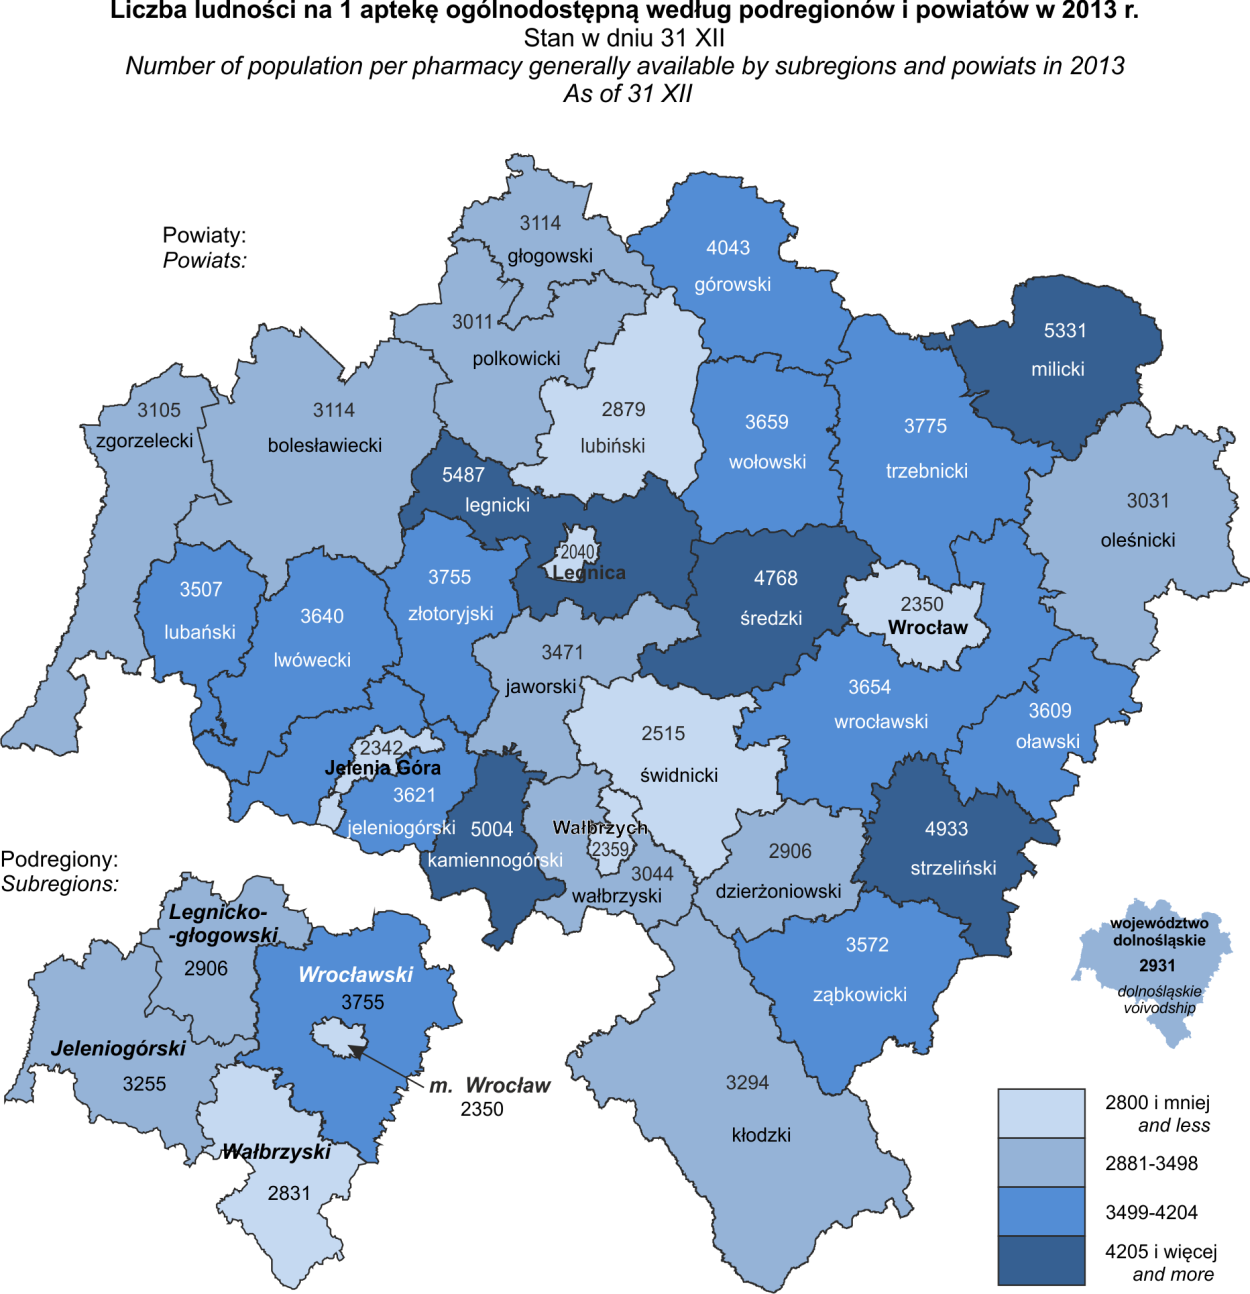 - 32 - analogicznego okresu poprzedniego roku było to więcej odpowiednio o 23 i o 3. Z ogólnej liczby aptek 91,0% działało w miastach, w tym ponad 27% we Wrocławiu.